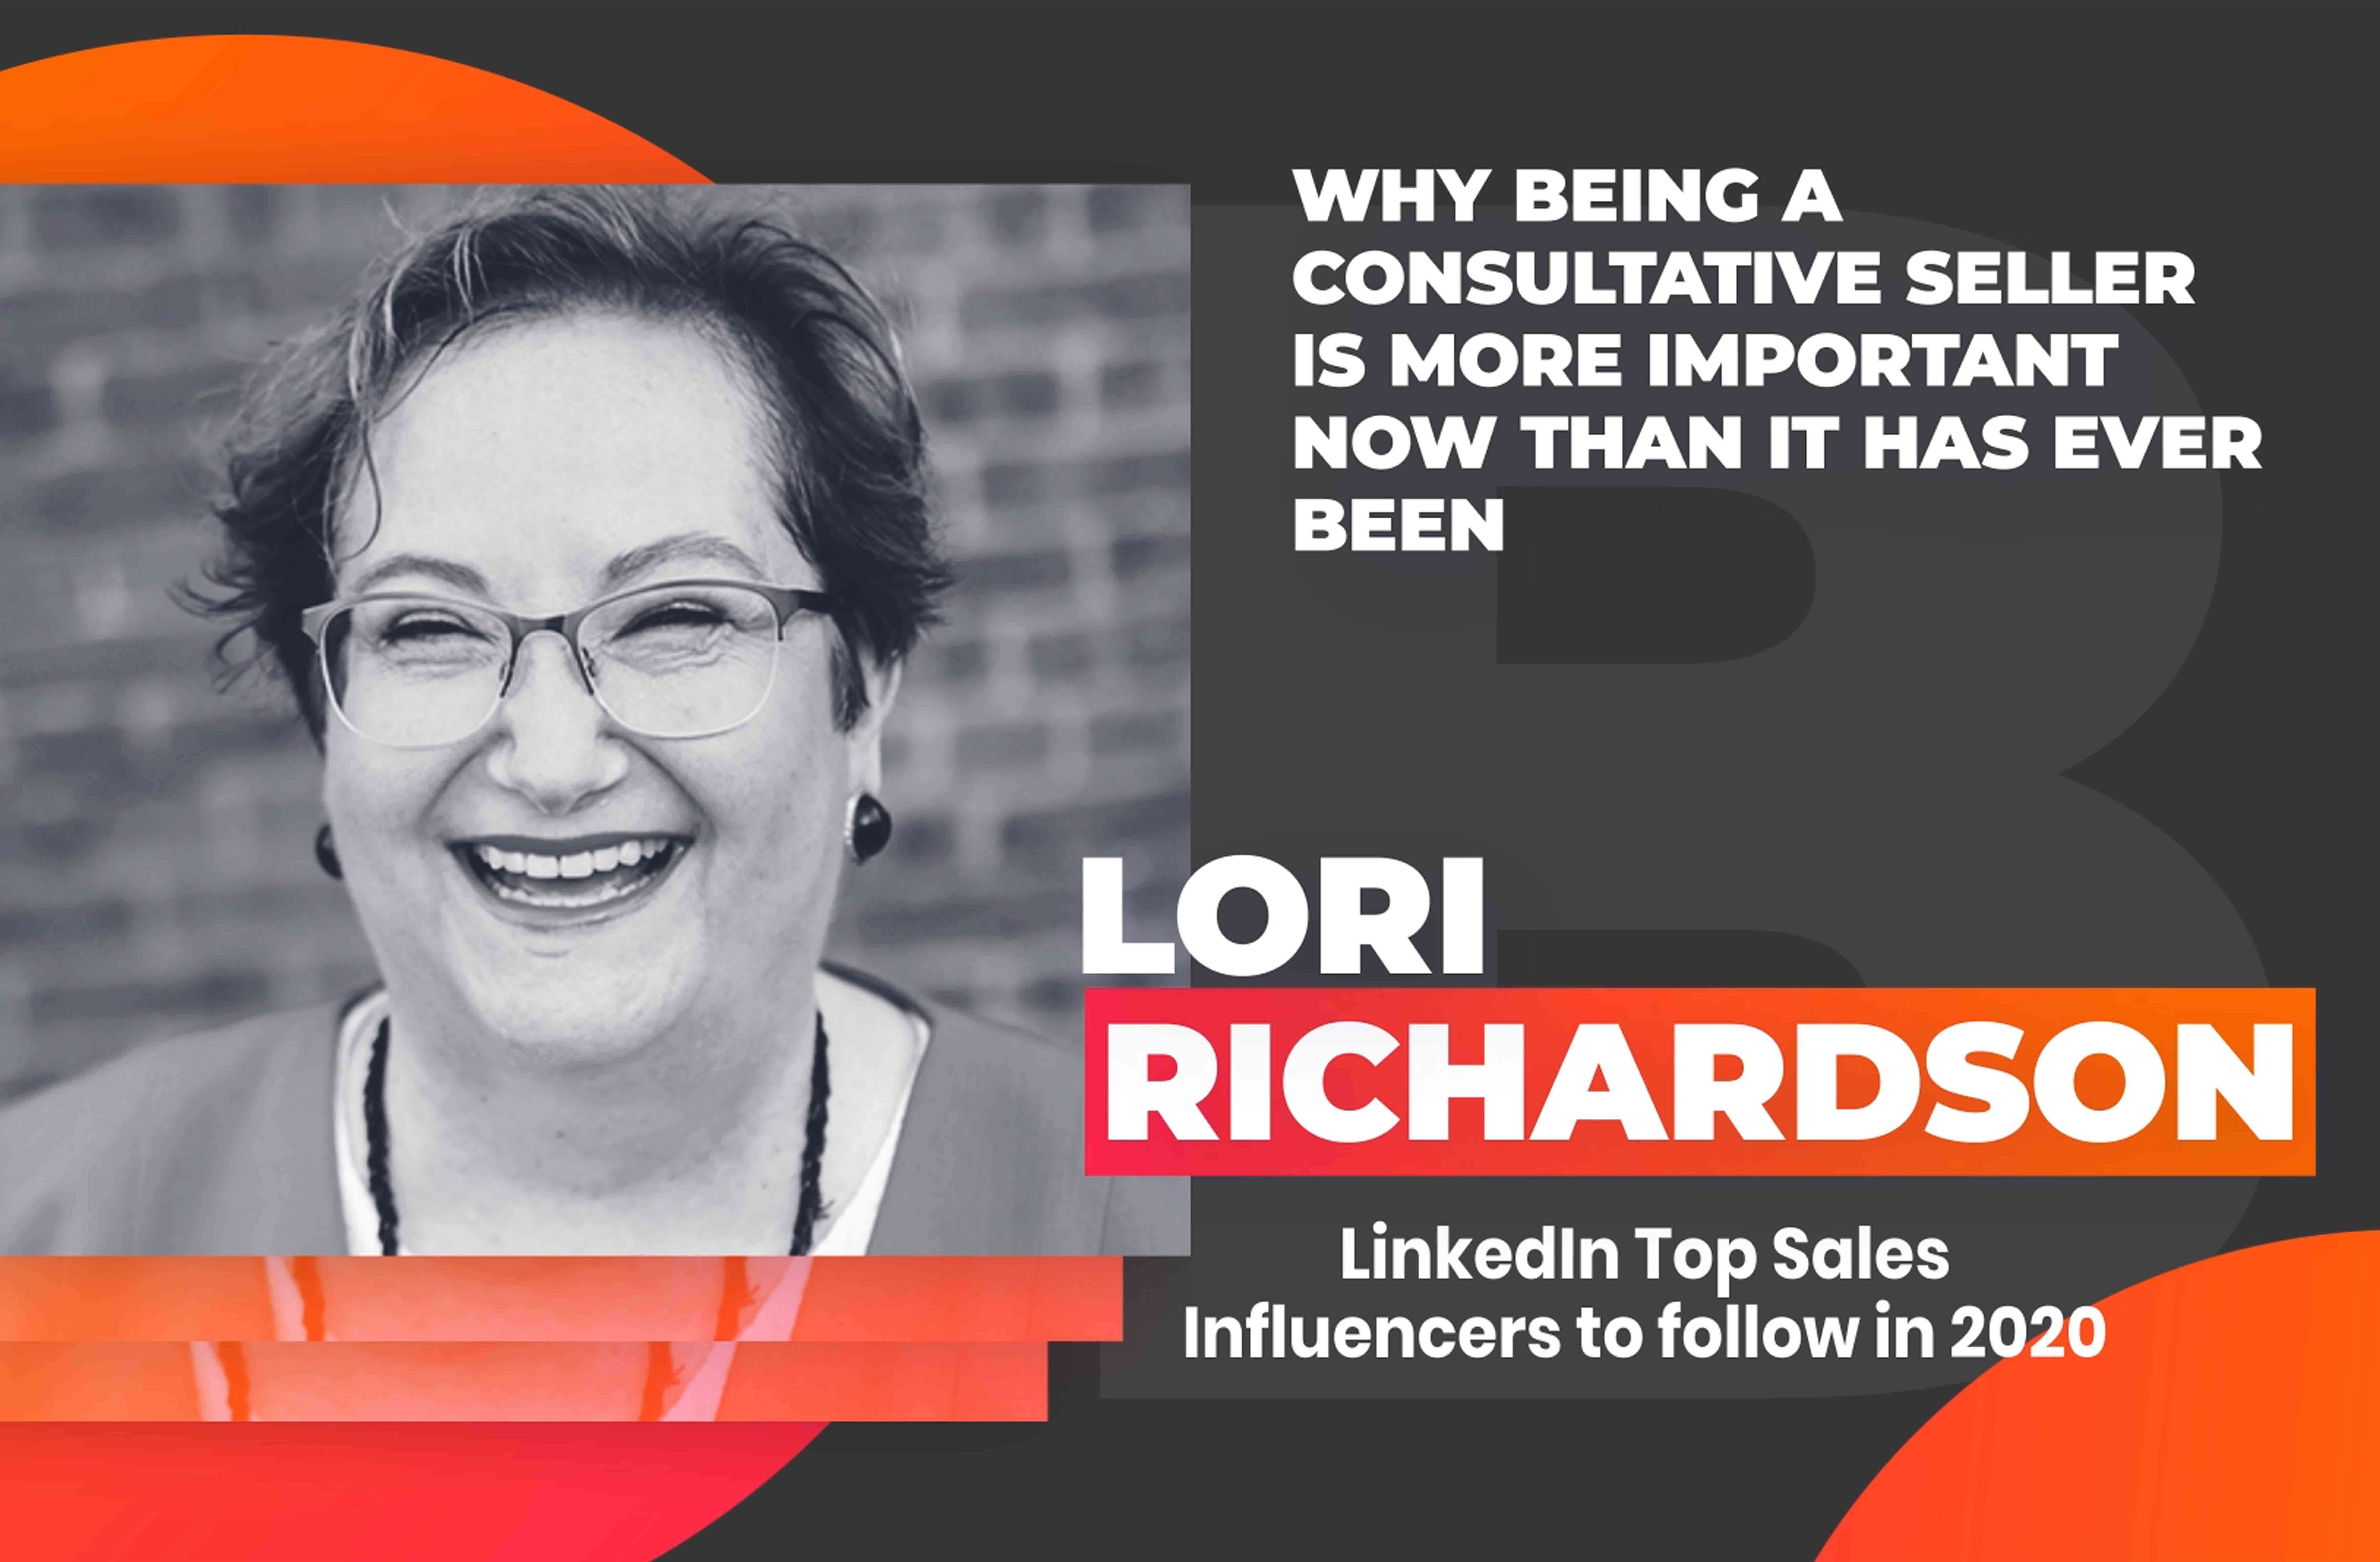 Lori Richardson - Score More Sales